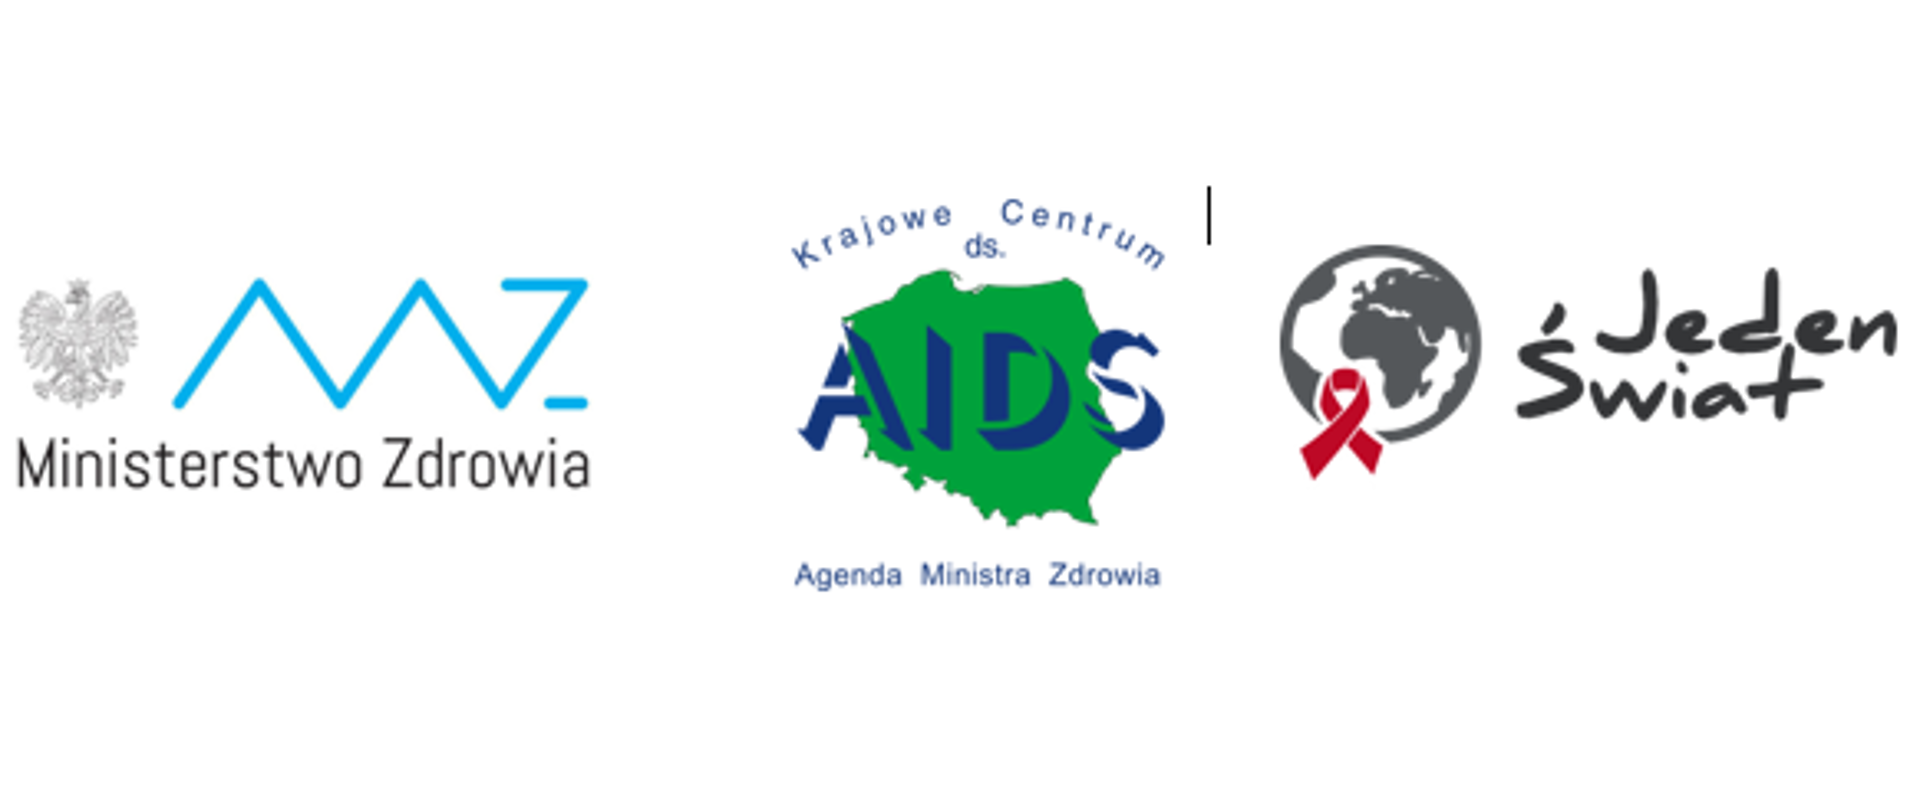 Loga: Ministerstwa Zdrowia, Krajowego Centrum ds. AIDS i Stowarzyszenia Jeden Świat